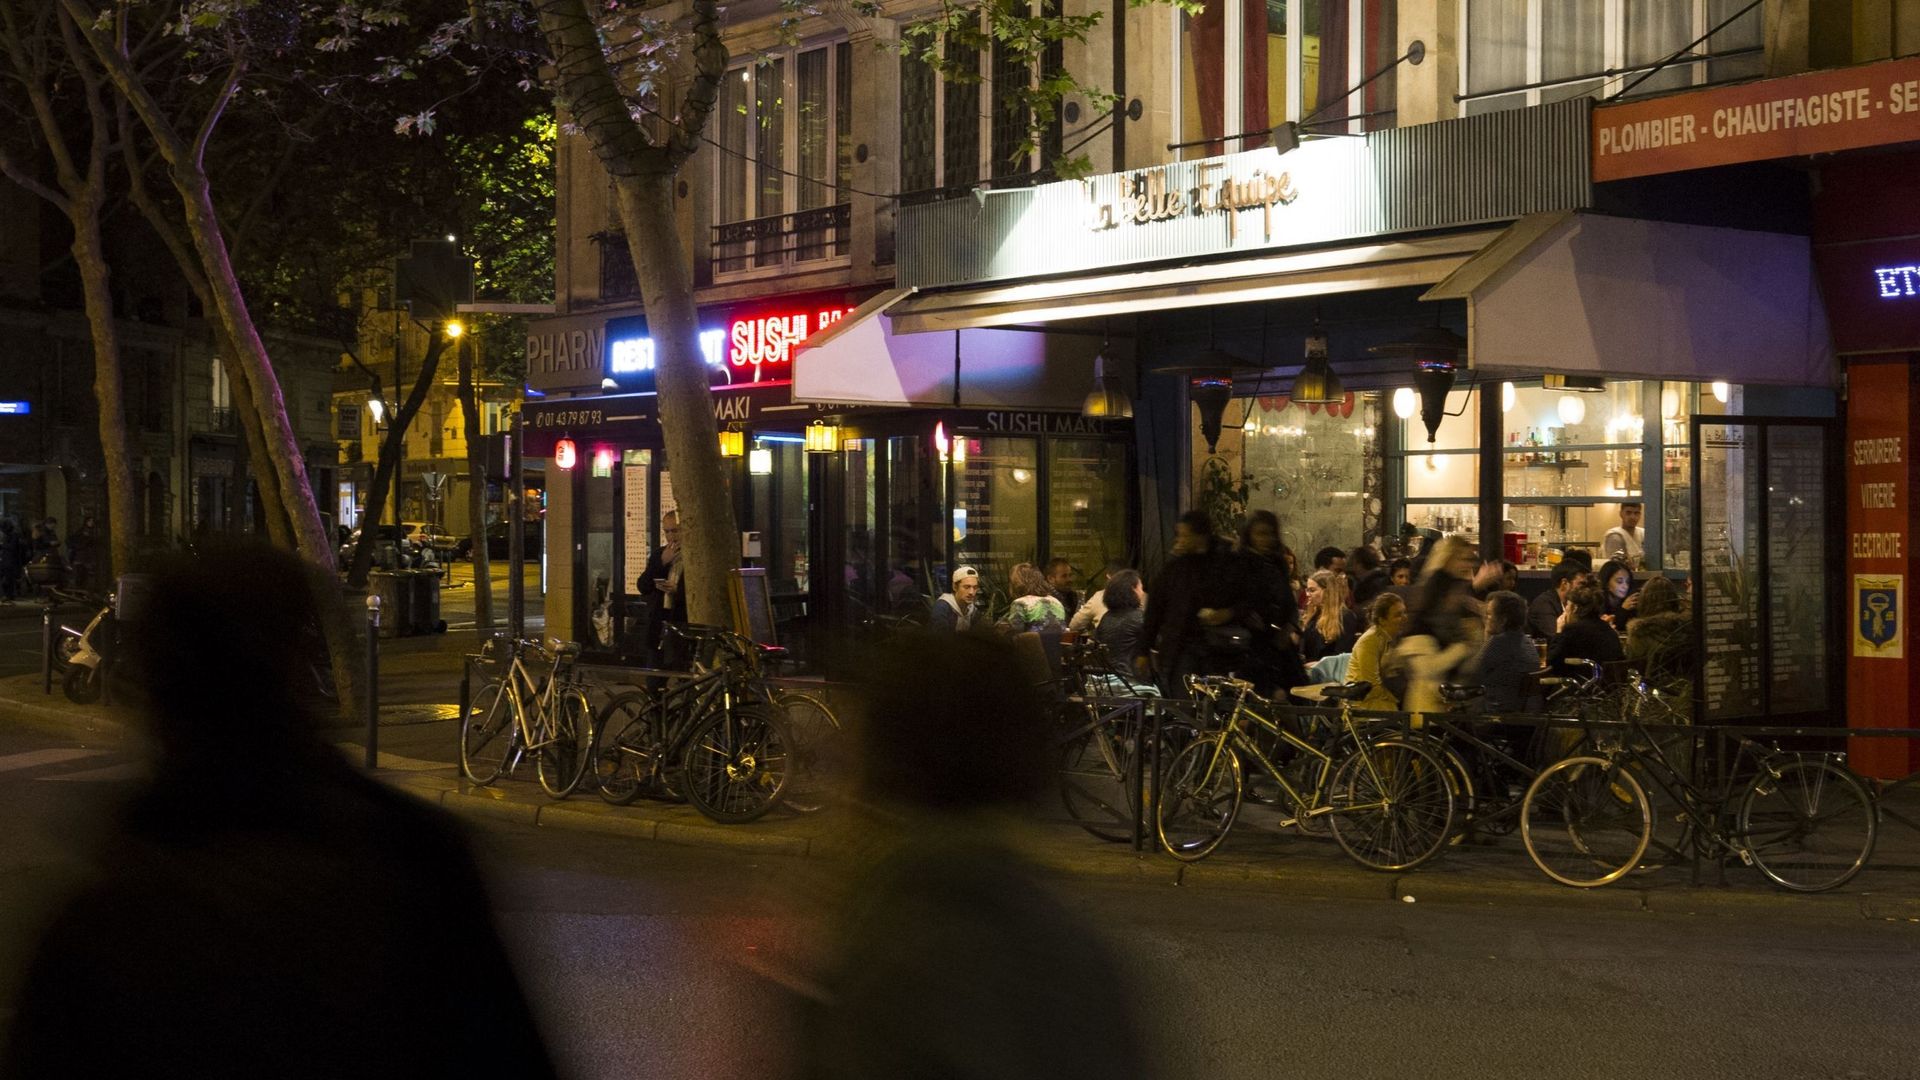 La terrasse de La Belle Equipe, un bar au cœur du Paris populaire, réunissait ce soir-là une soixantaine de personnes. On y fêtait deux anniversaires.